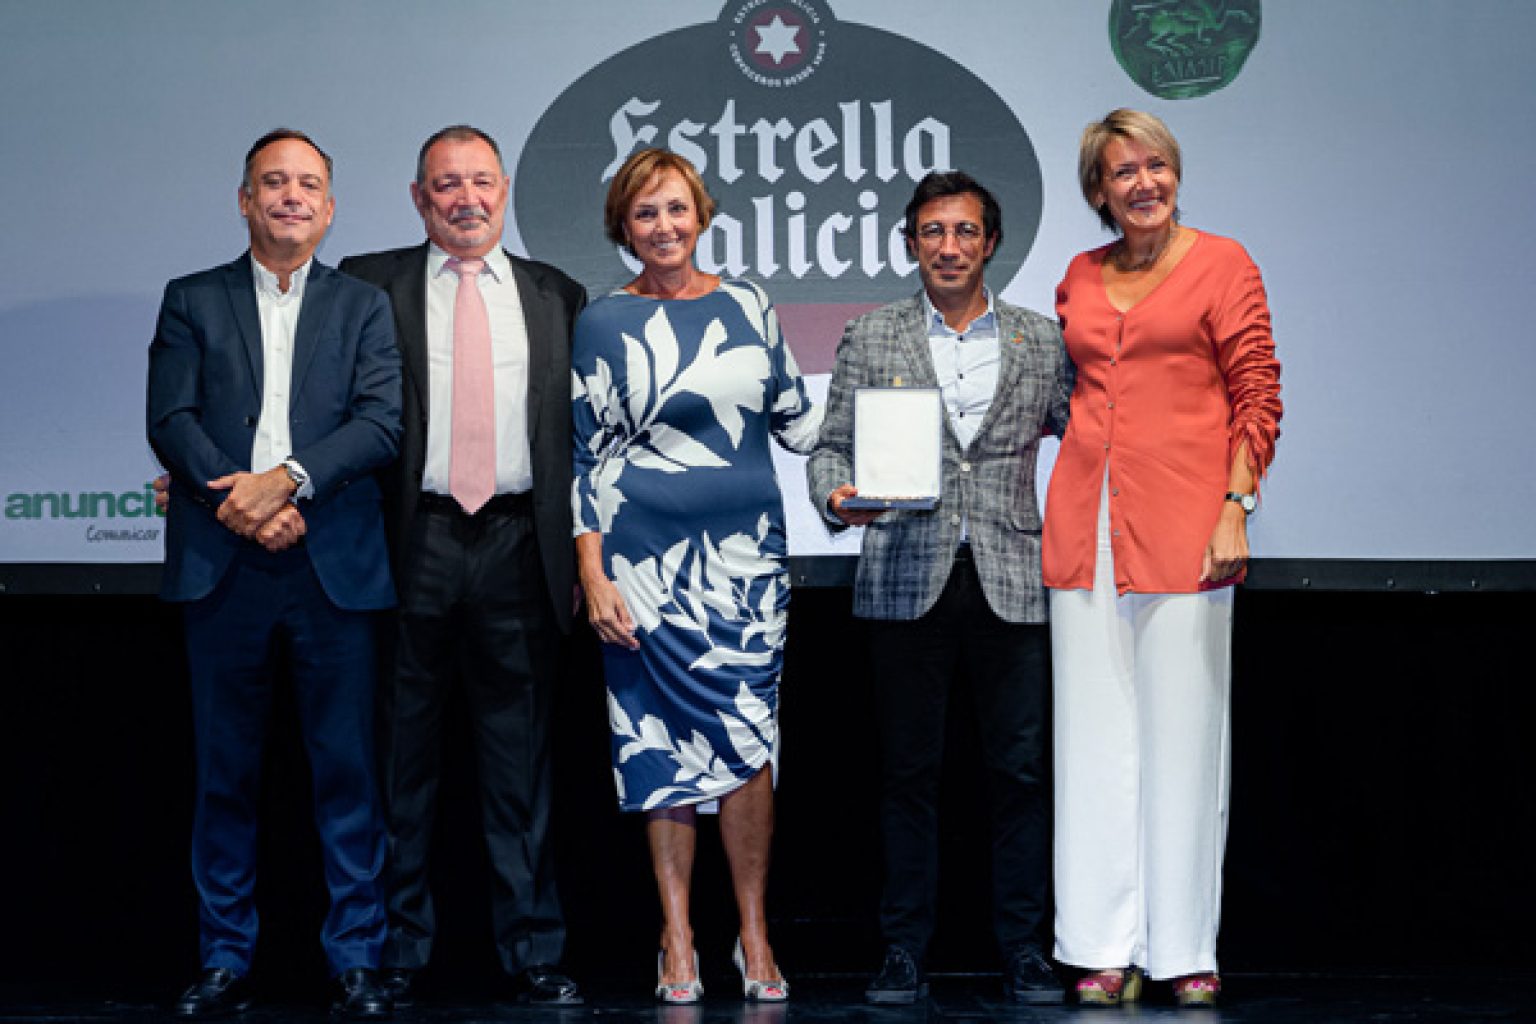 Estrella Galicia recibe el Premio Eficacia a la trayectoria publicitaria de una marca